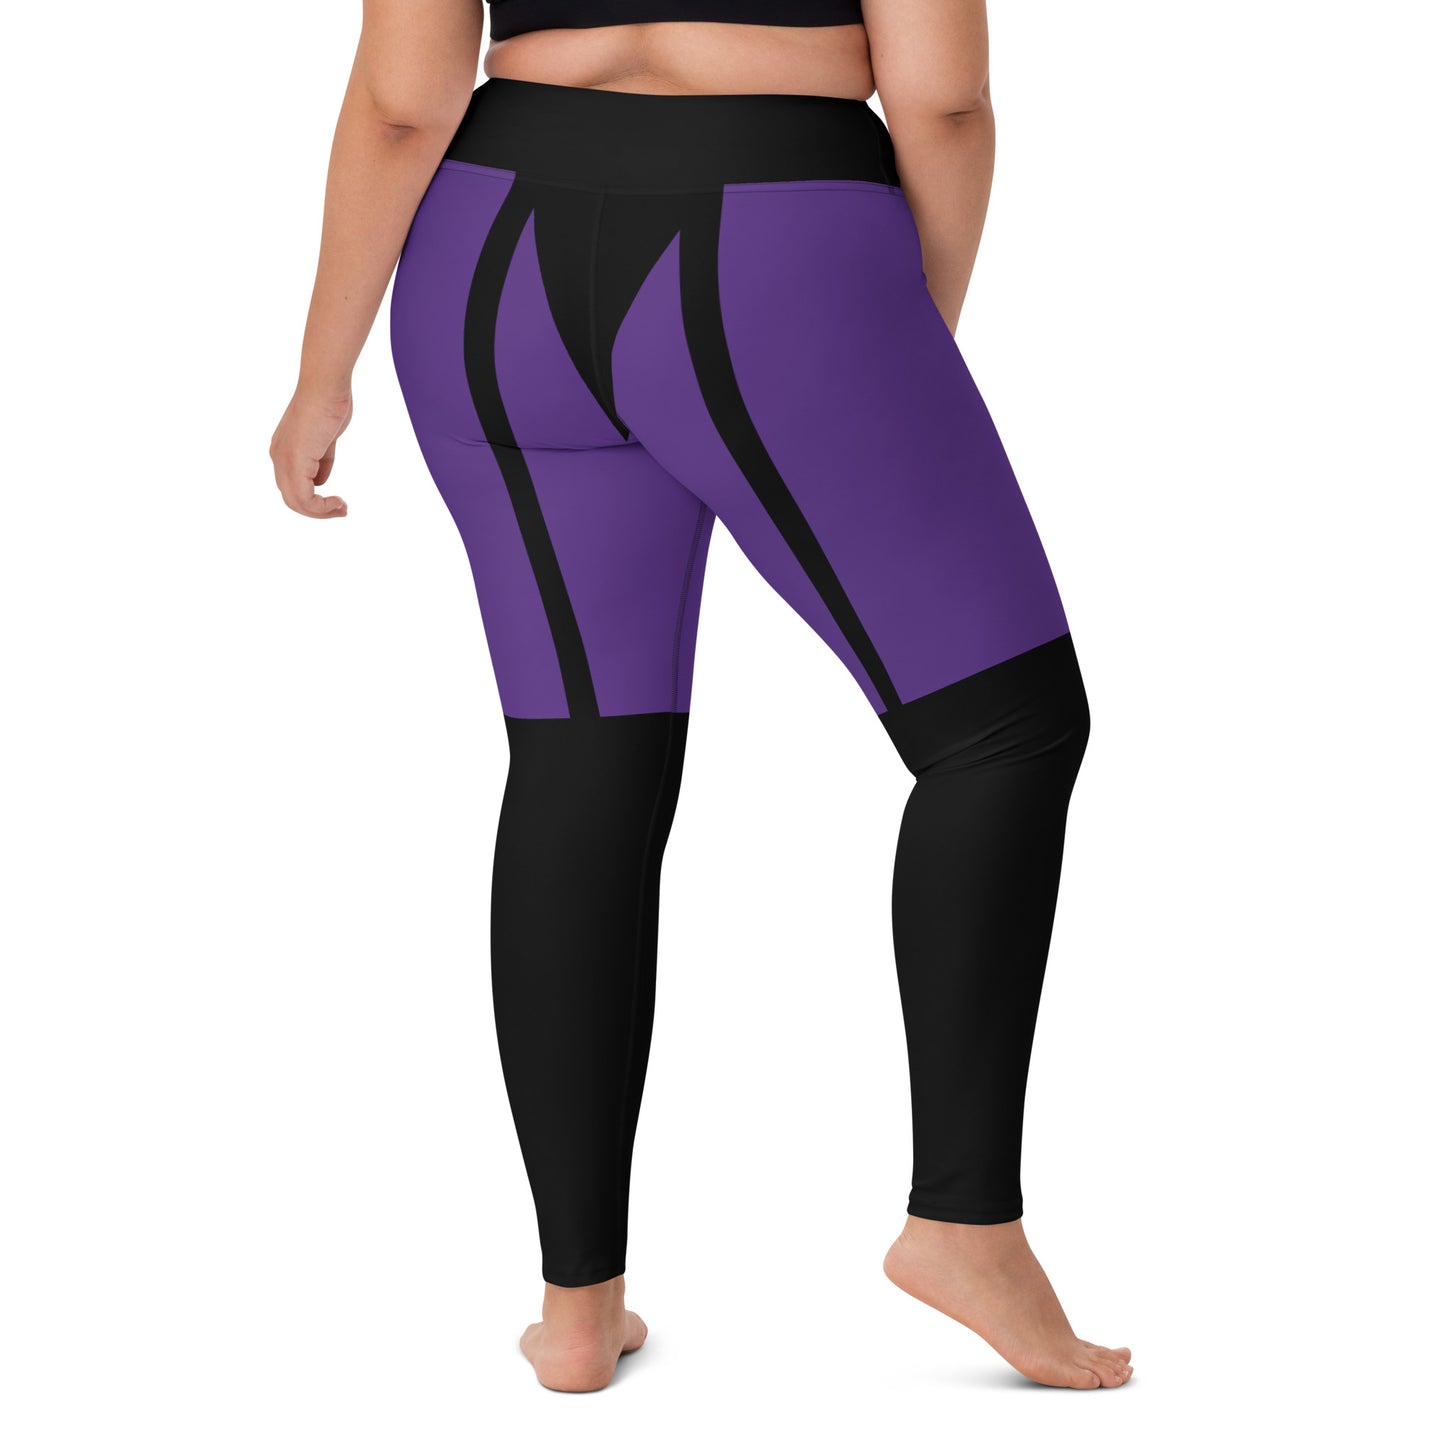 Garter leggings(purple&black)